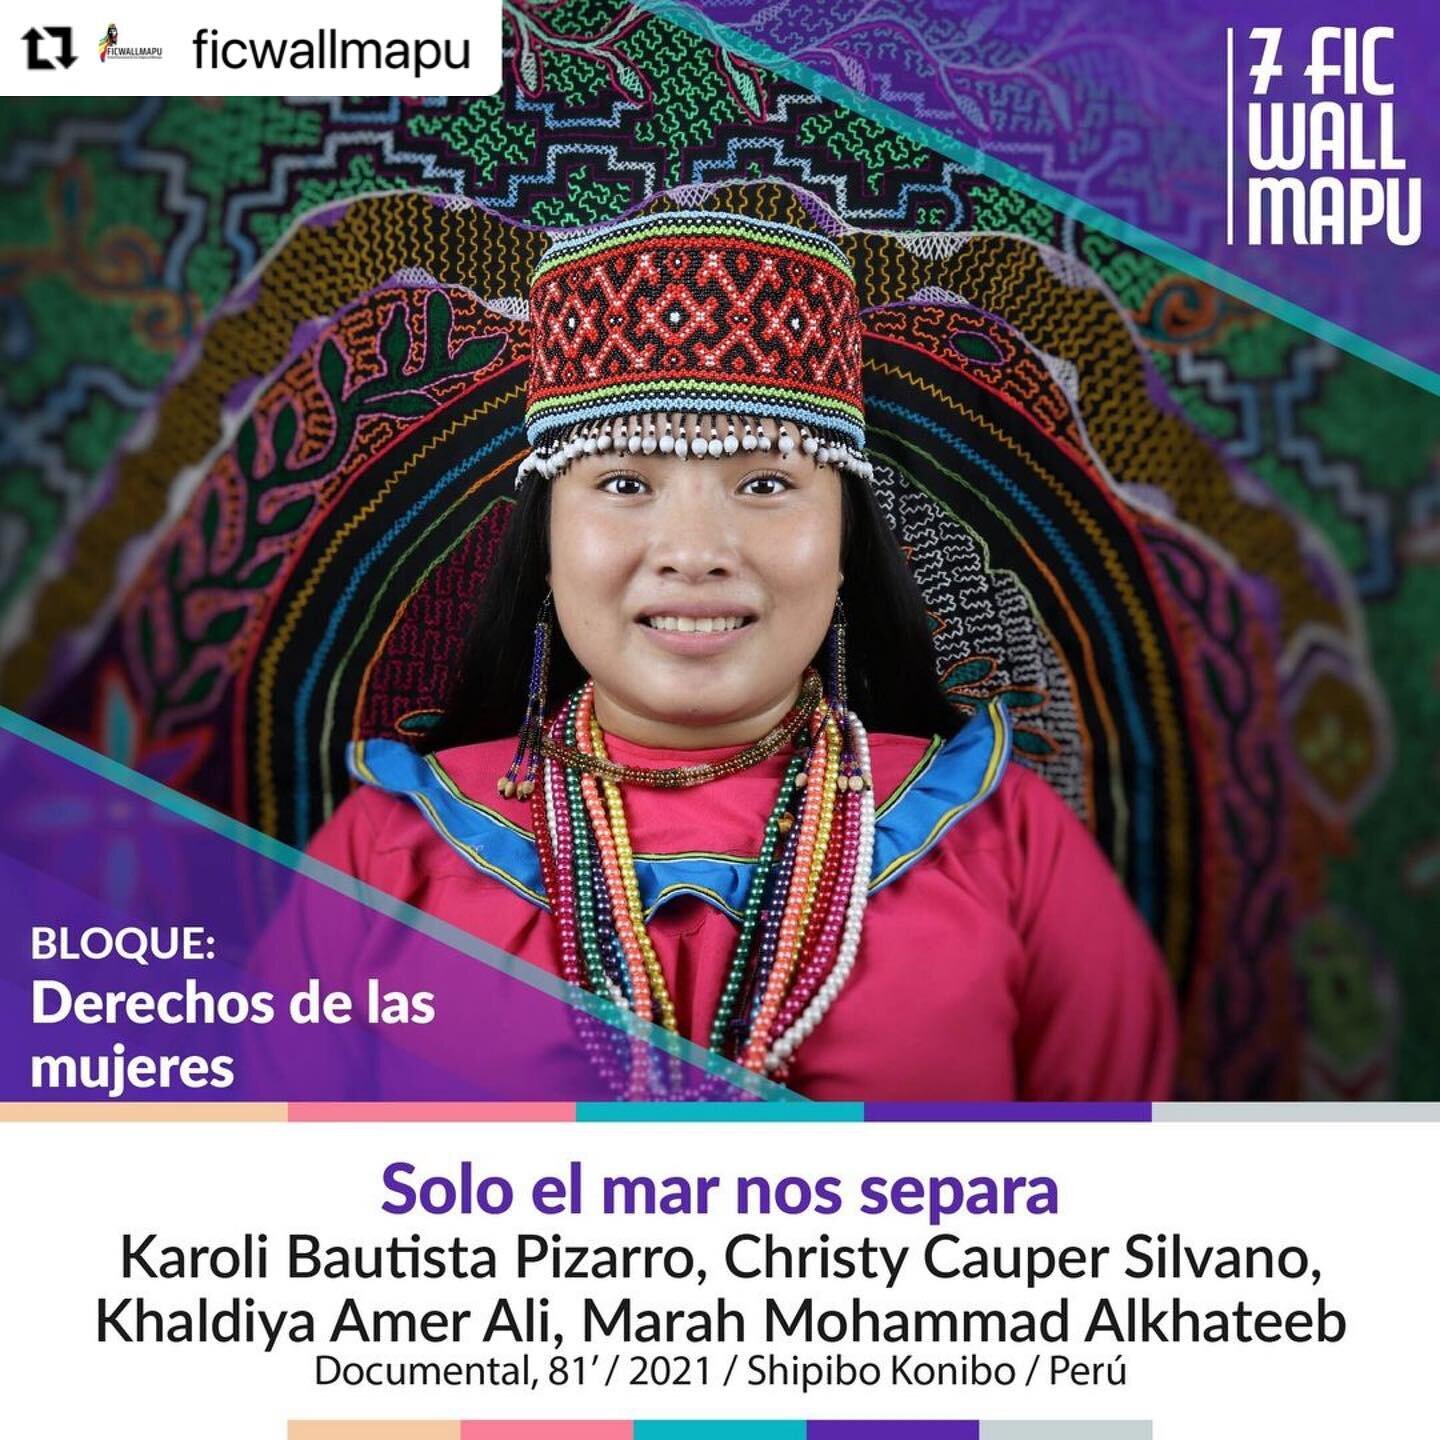 &iexcl;&iexcl;Ma&ntilde;ana empieza @ficwallmapu !! Estamos muy orgullosas de formar parte del 7mo Festival Internacional de Cine y las Artes Ind&iacute;genas y Afrodescendientes en Wallmapu, del 15-19 de marzo en territorio mapuche, Chile ✨ 

#Repos